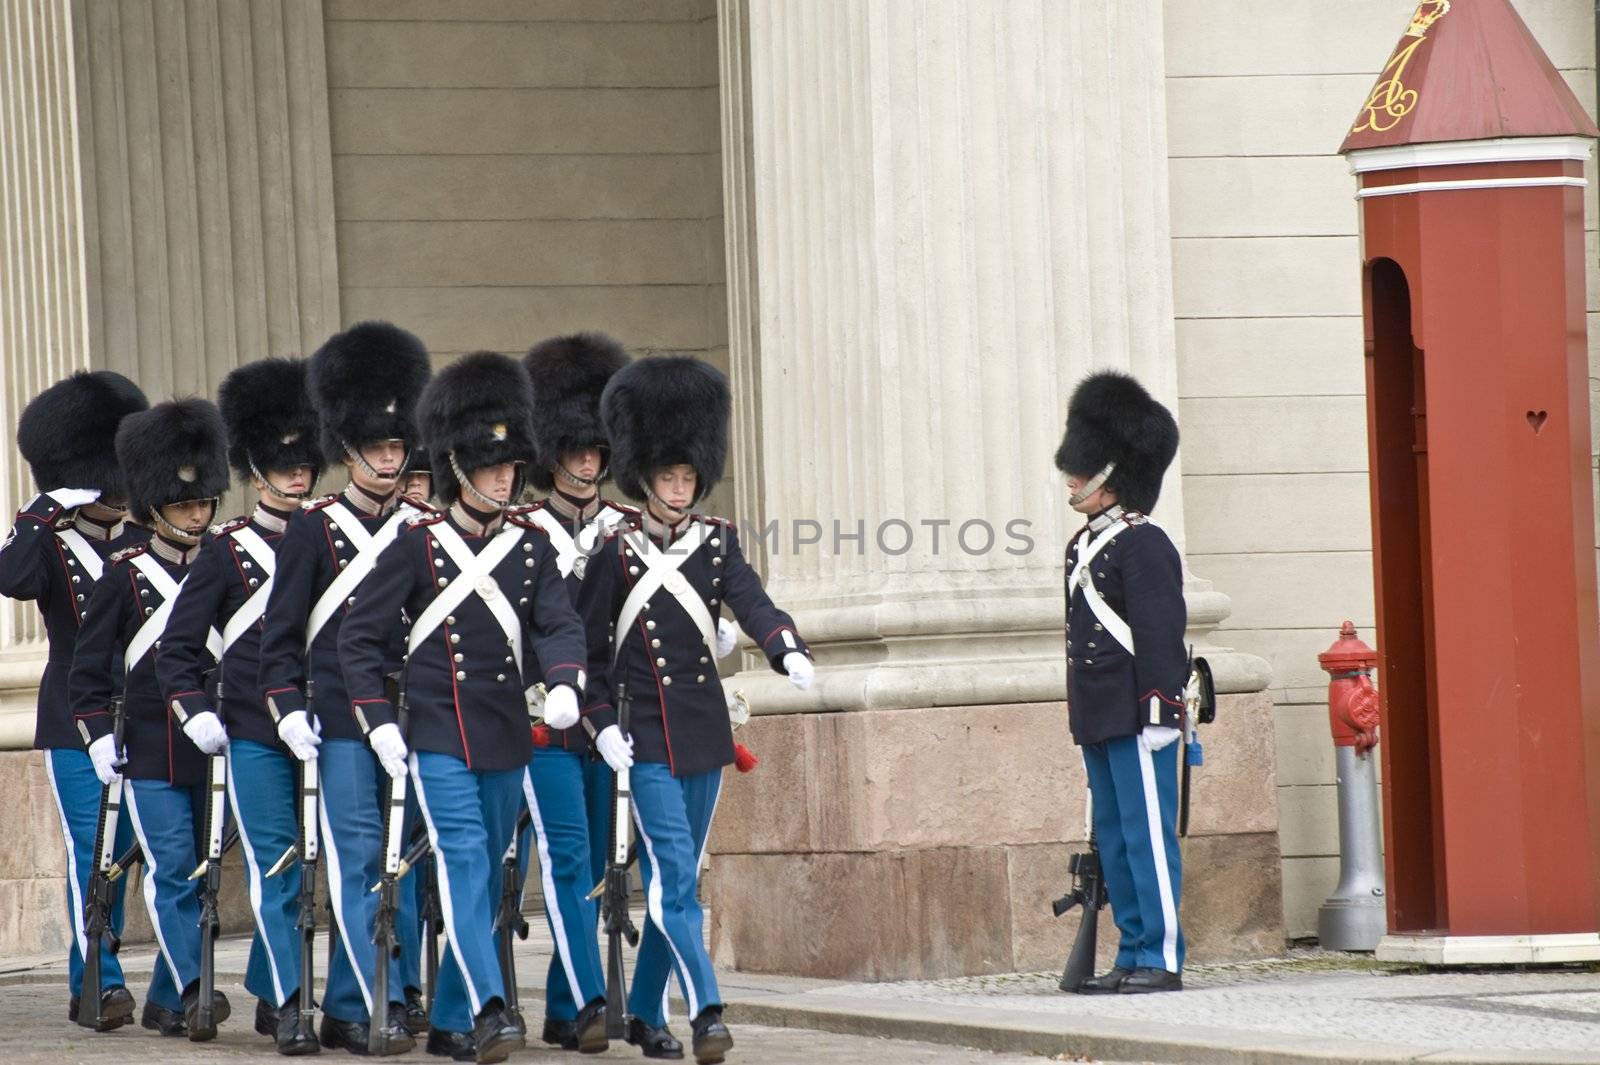 Royal guard by Alenmax